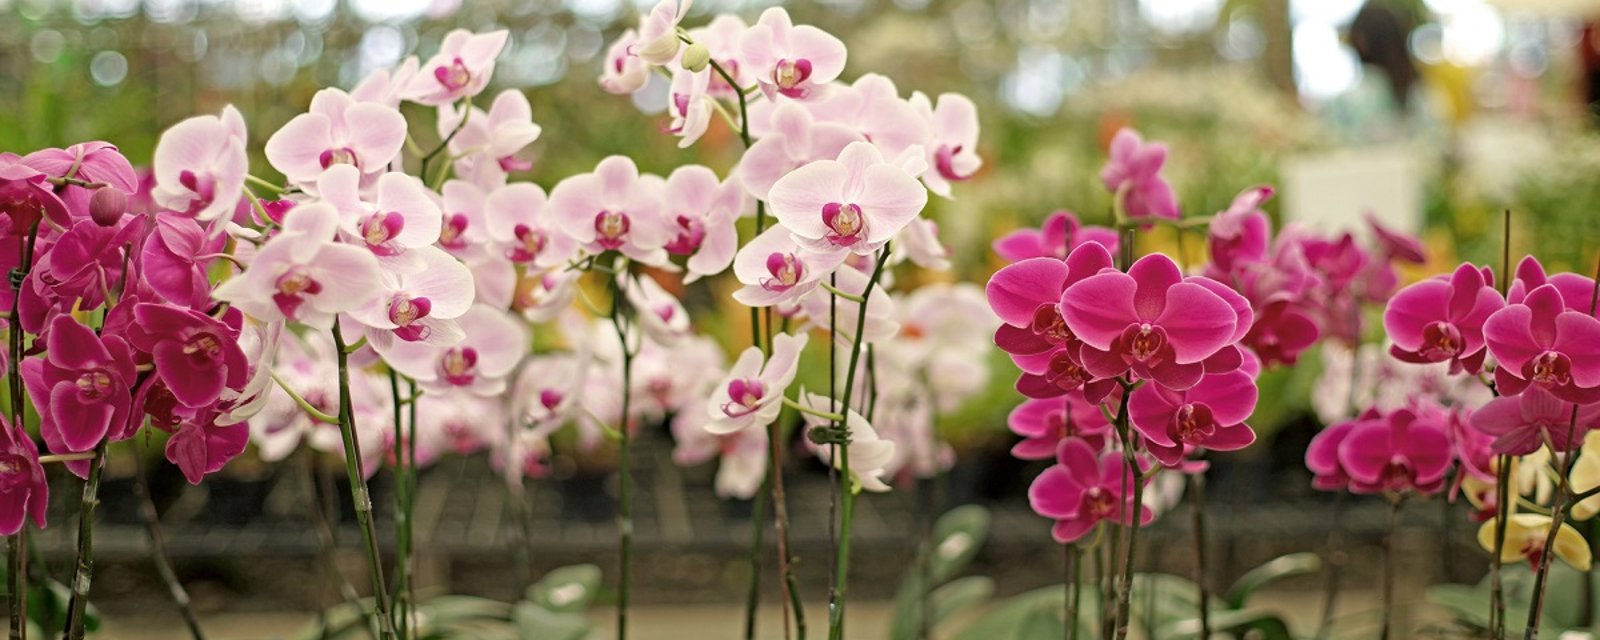 Les 5 règles de base pour bien prendre soin d'une orchidée